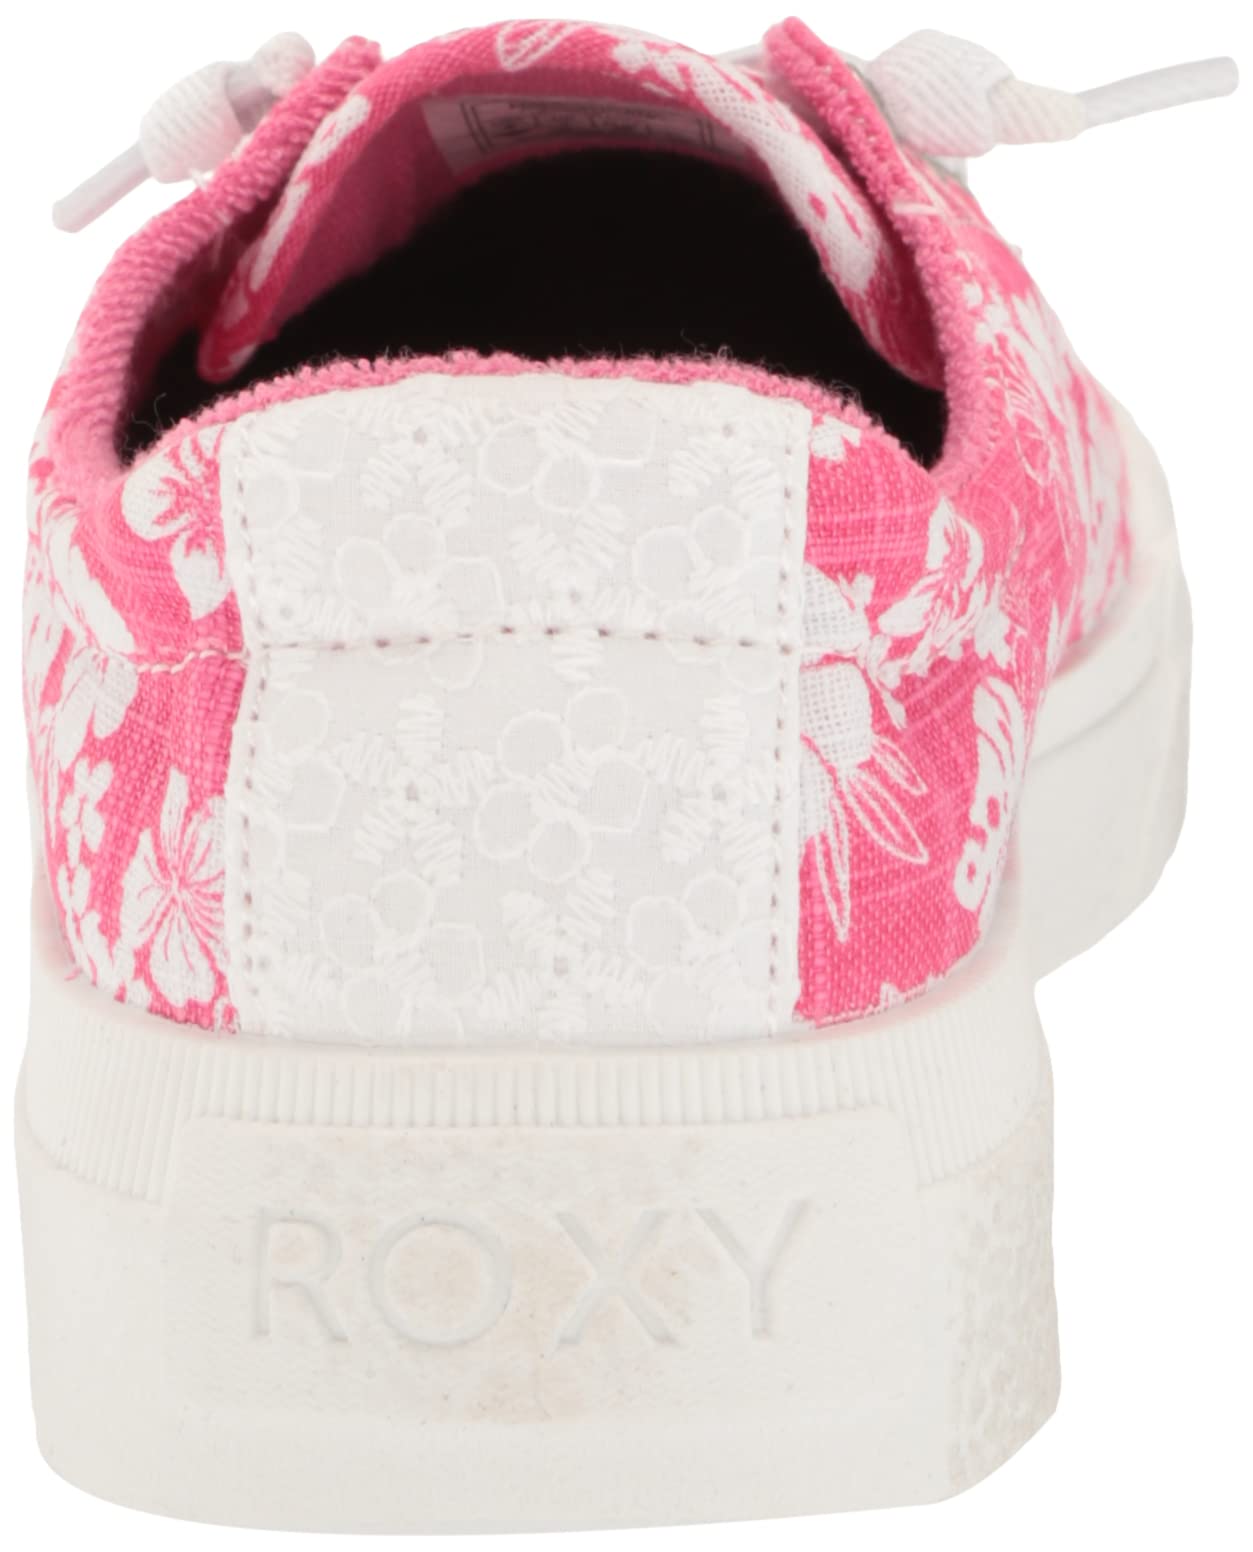 Roxy Women's Rae Sneaker Shoe